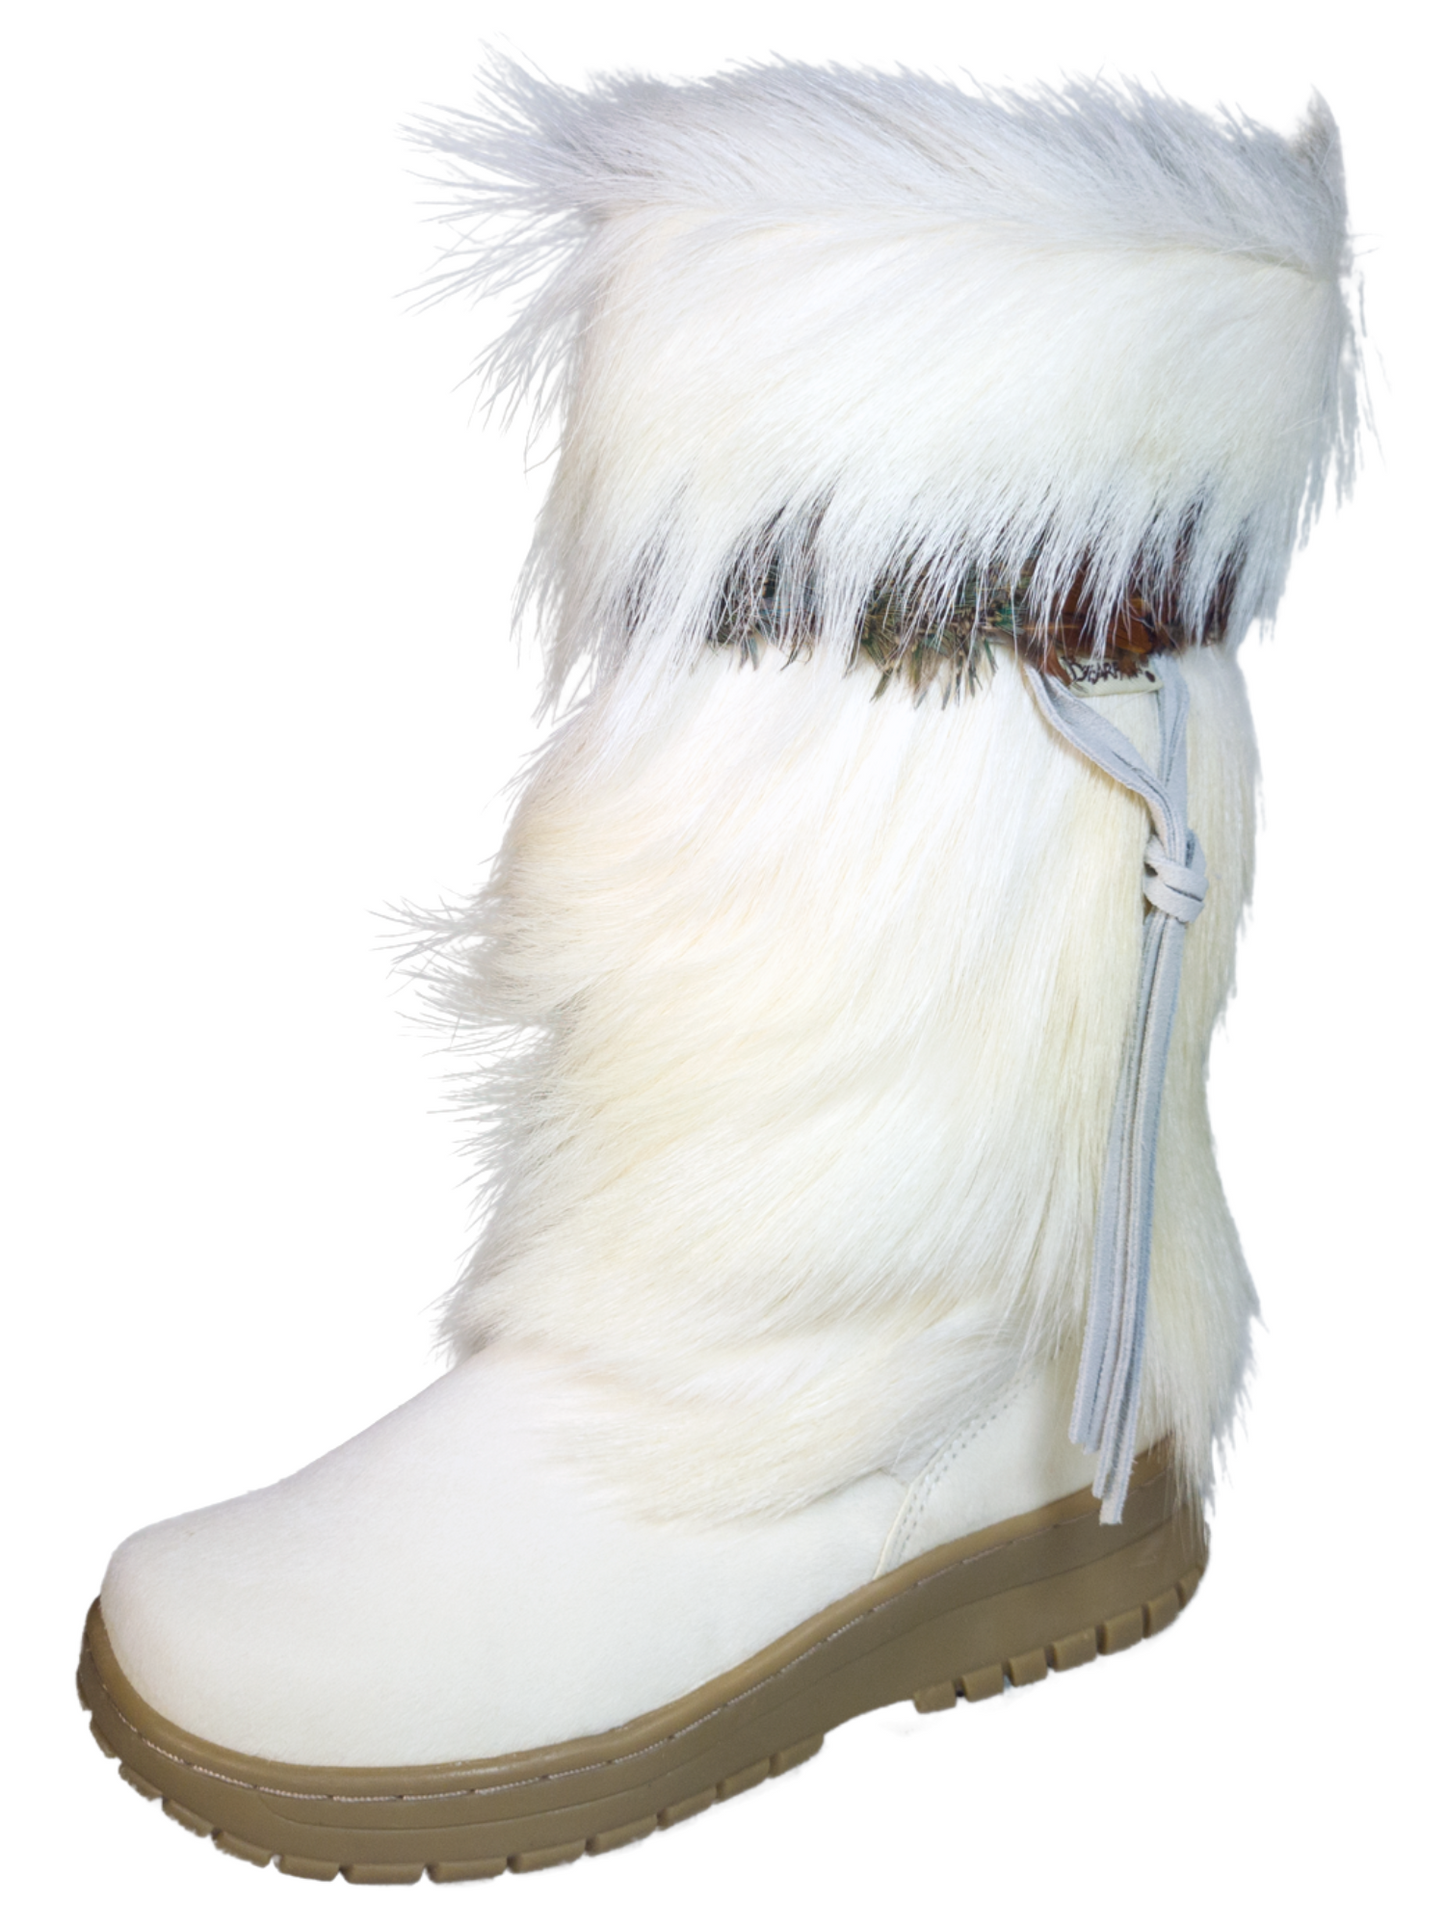 Botas de Invierno para la Nieve de Piel Genuina con Pelo/Pelo de Cabra para Mujer 'Bearpaw' - ID: 7108 Winter Boots Bearpaw Blanco